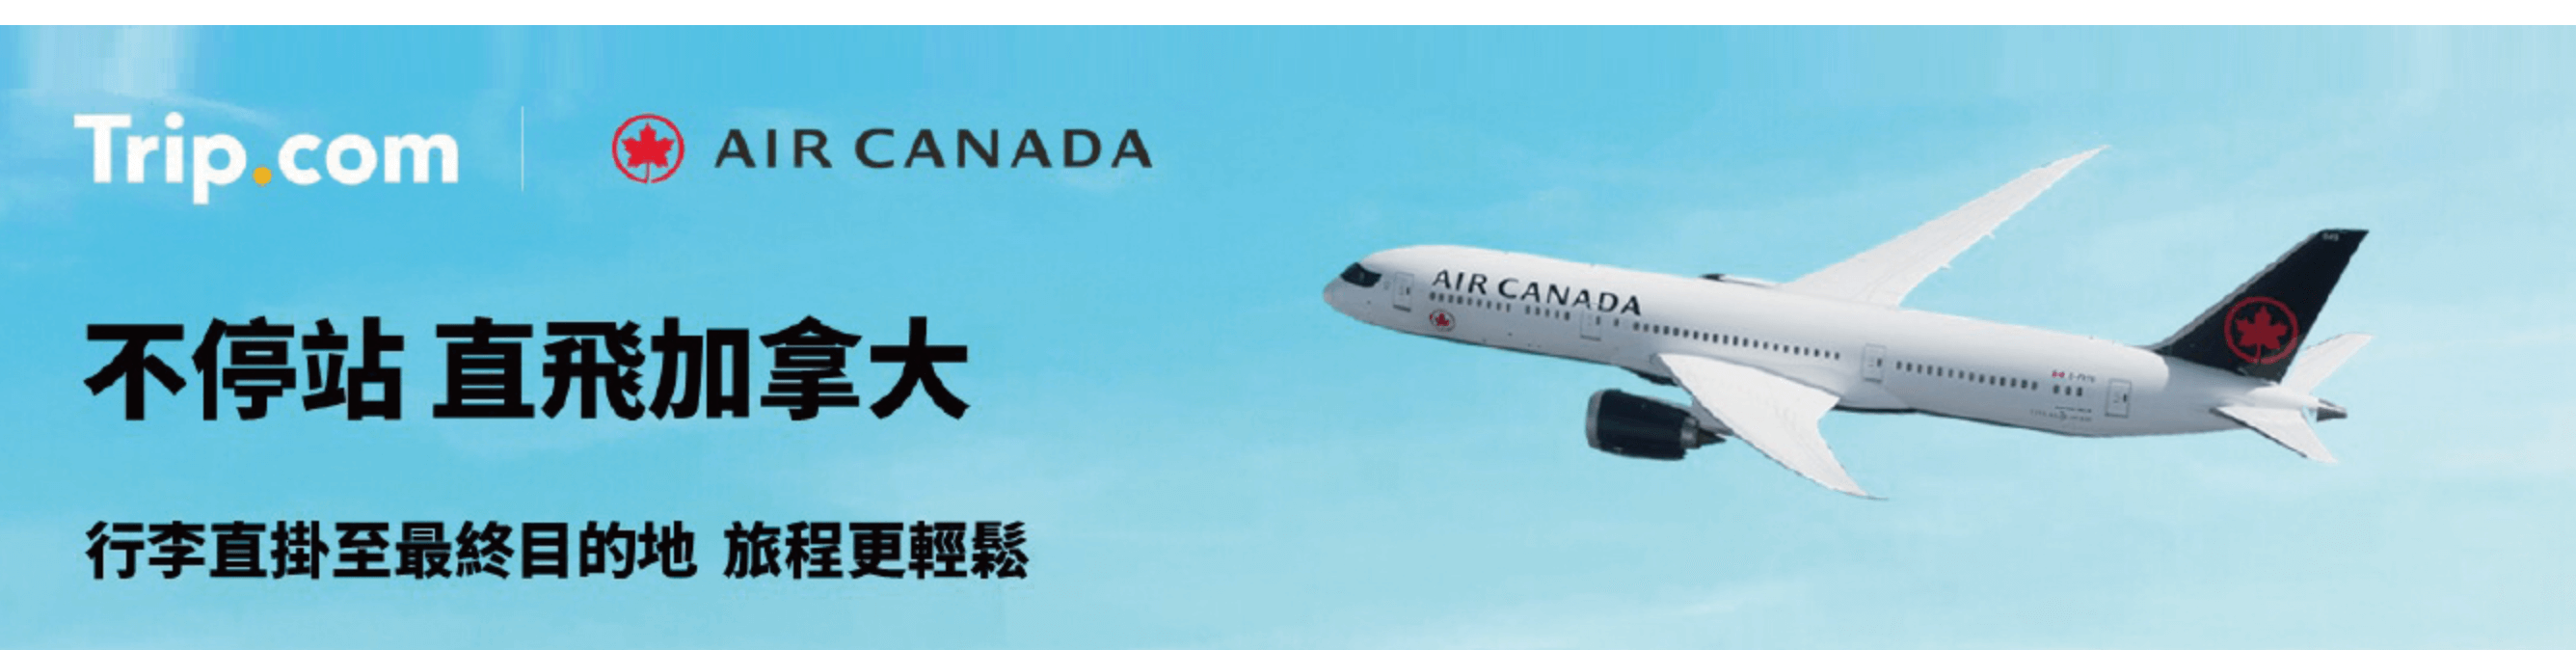 Trip.com優惠代碼2022- 加拿大直航機票 低至$4935